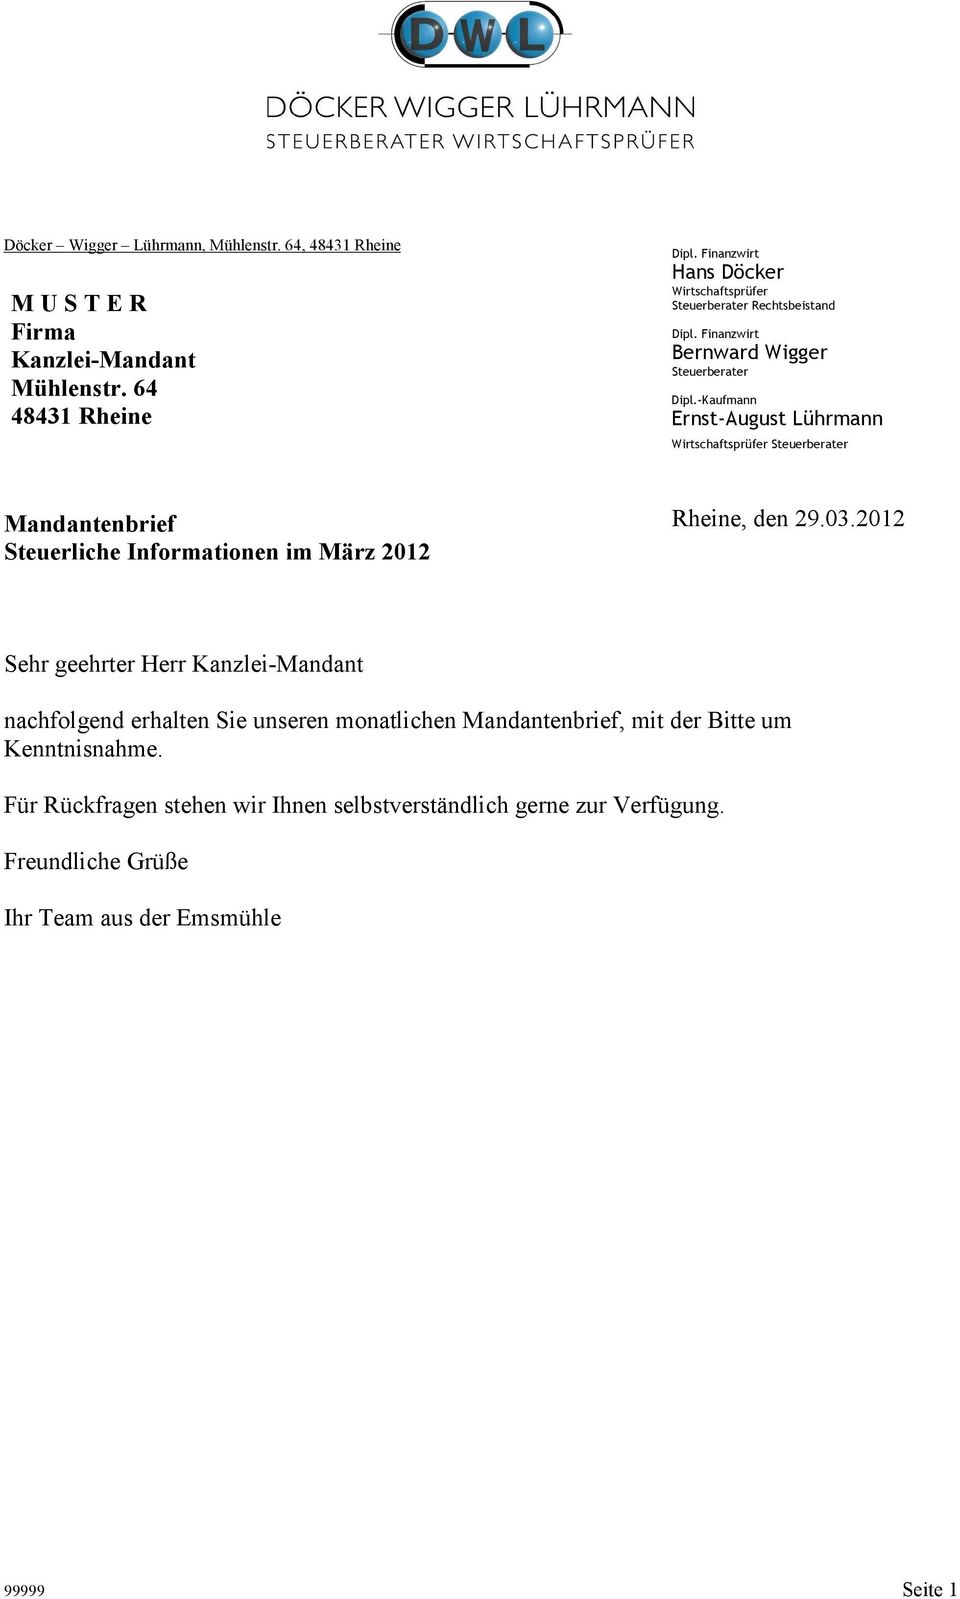 -Kaufmann Ernst-August Lührmann Wirtschaftsprüfer Steuerberater Mandantenbrief Steuerliche Informationen im März 2012 Rheine, den 29.03.